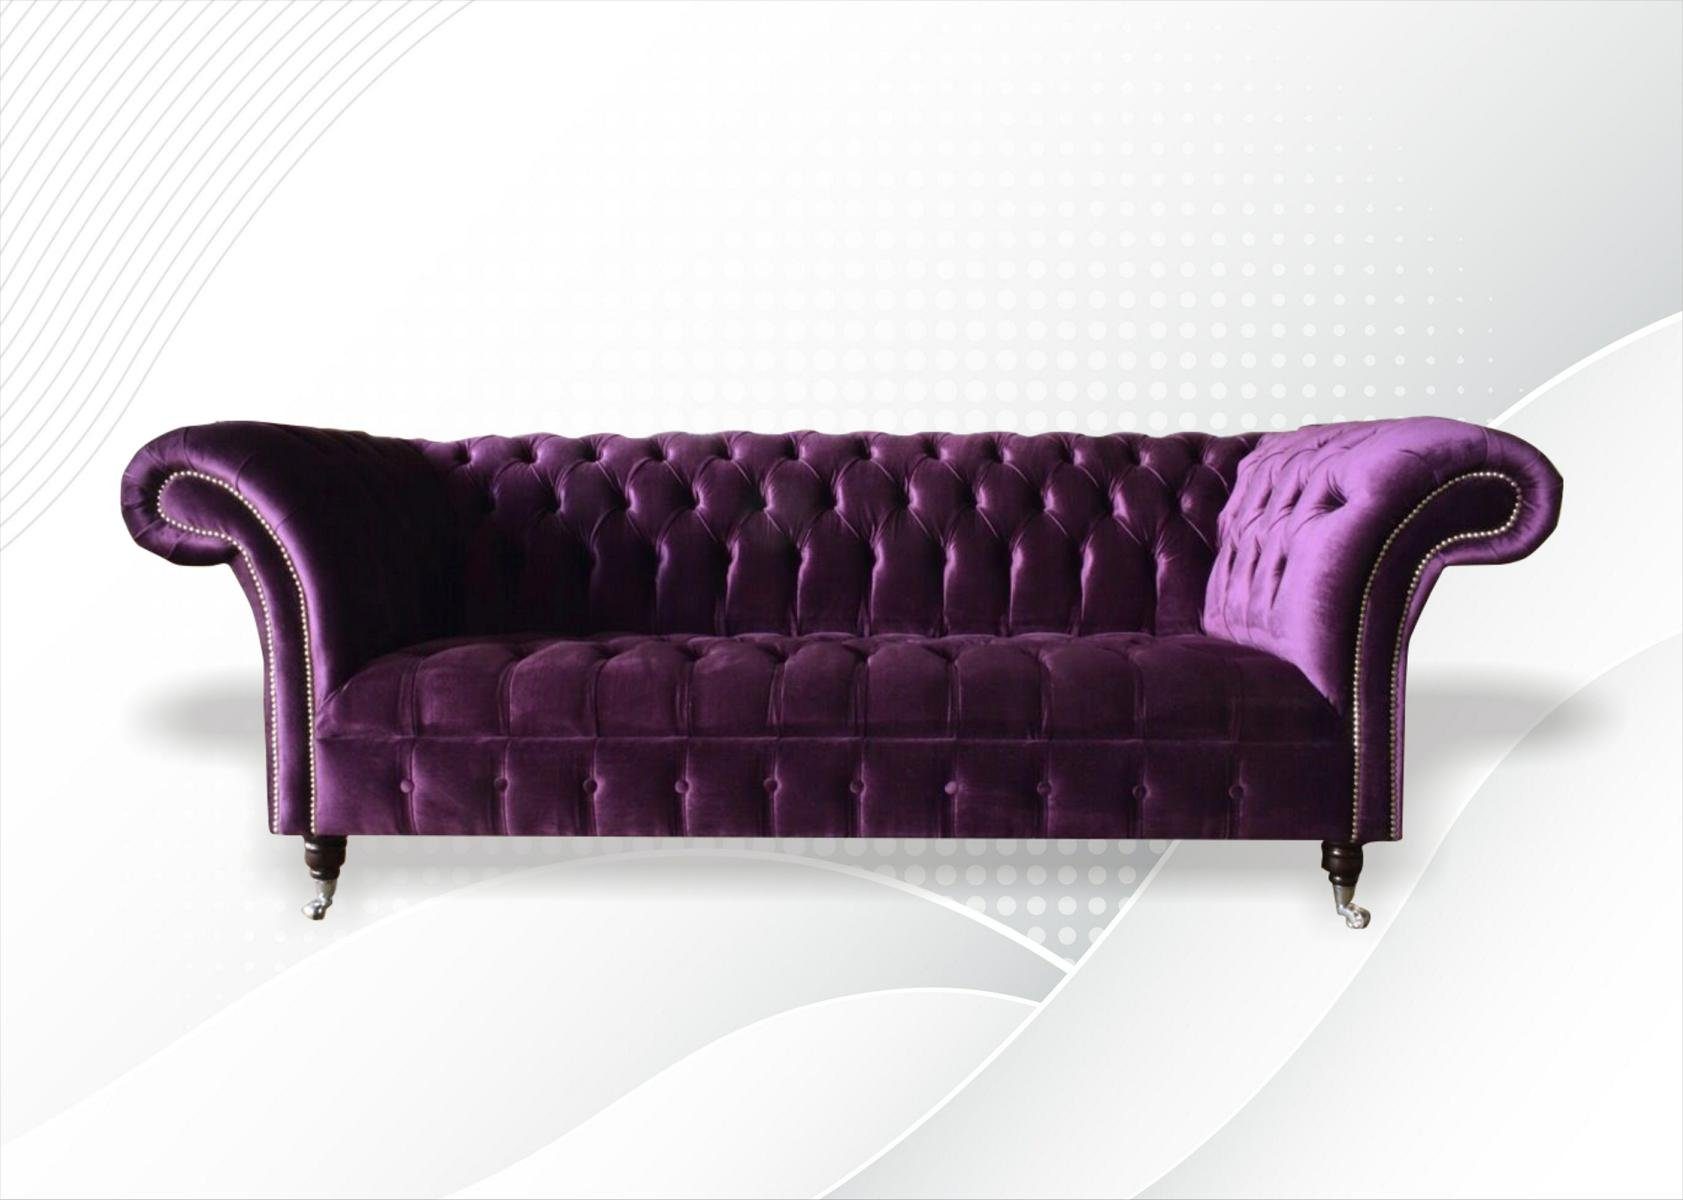 JVmoebel Chesterfield-Sofa Moderner Chesterfield violetter Dreisitzer luxus Möbel Couch Neu, Made in Europe